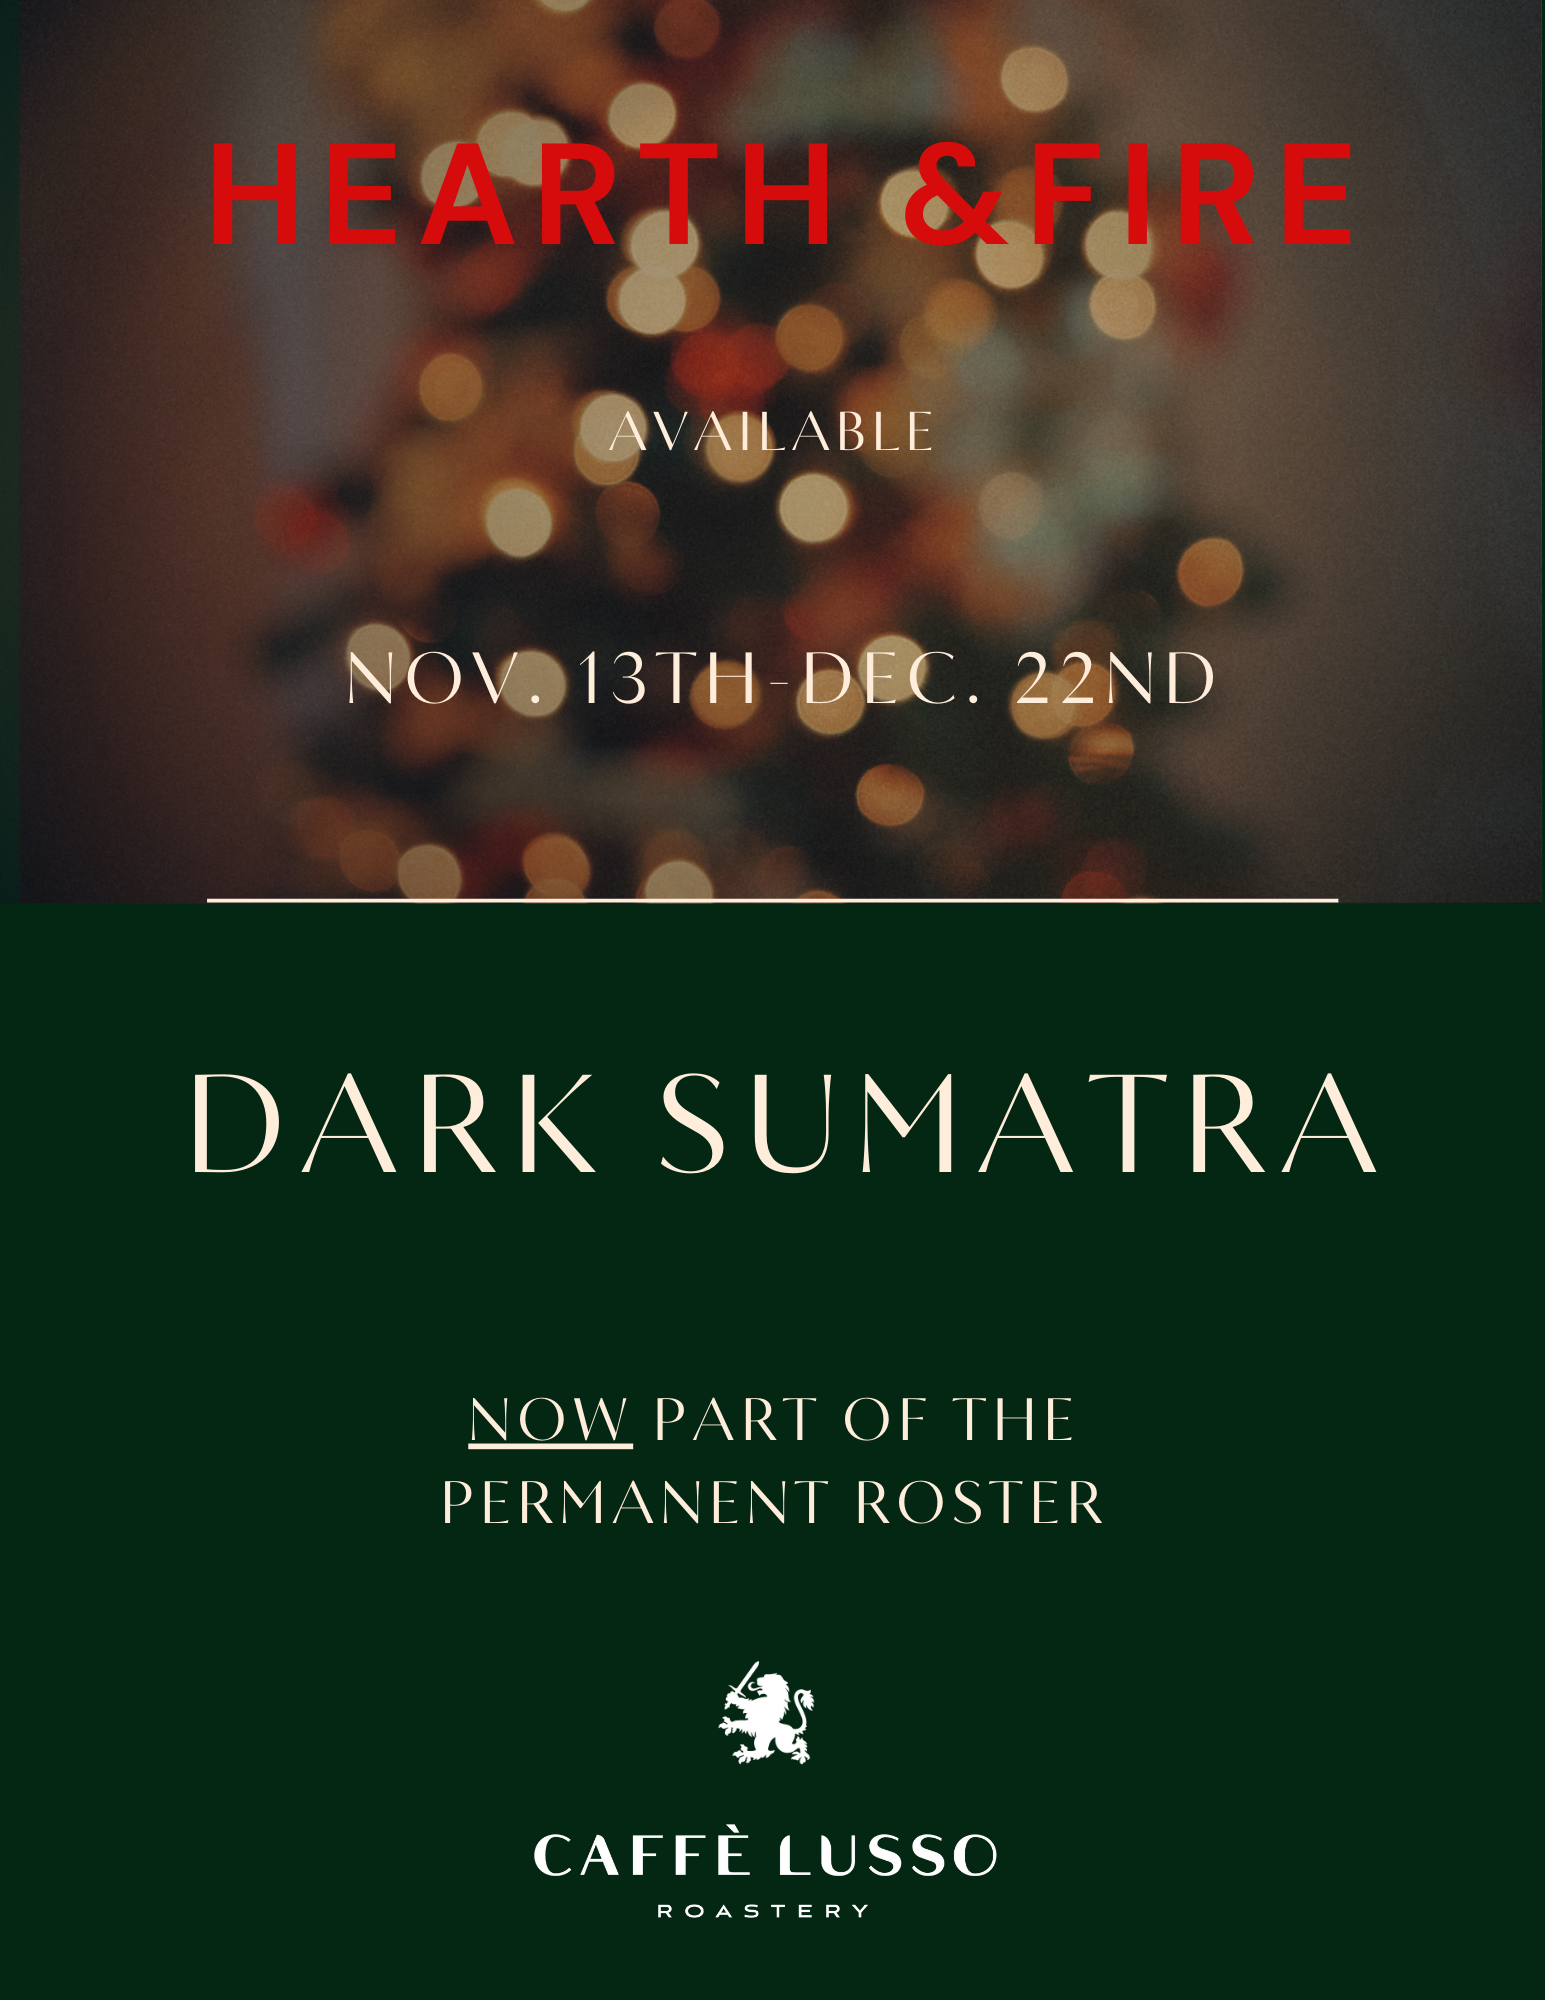 Dark Sumatra and Hearth & Fire